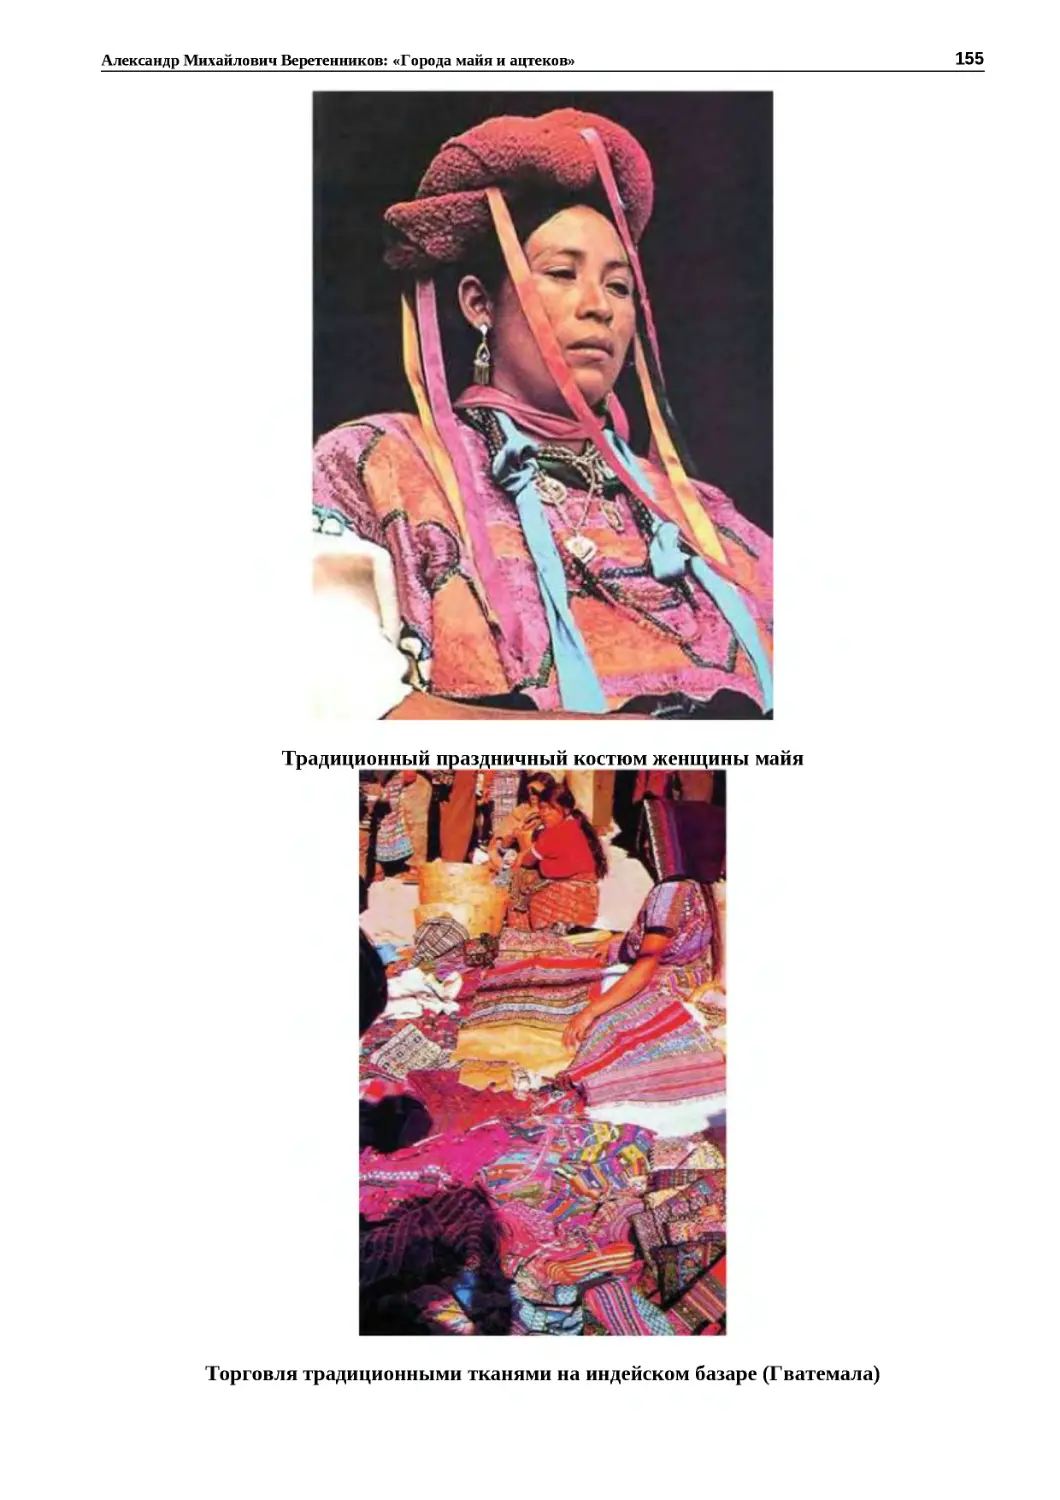 "
﻿Традиционный праздничный костюм женщины май
"
﻿Торговля традиционными тканями на индейском базаре øГватемала